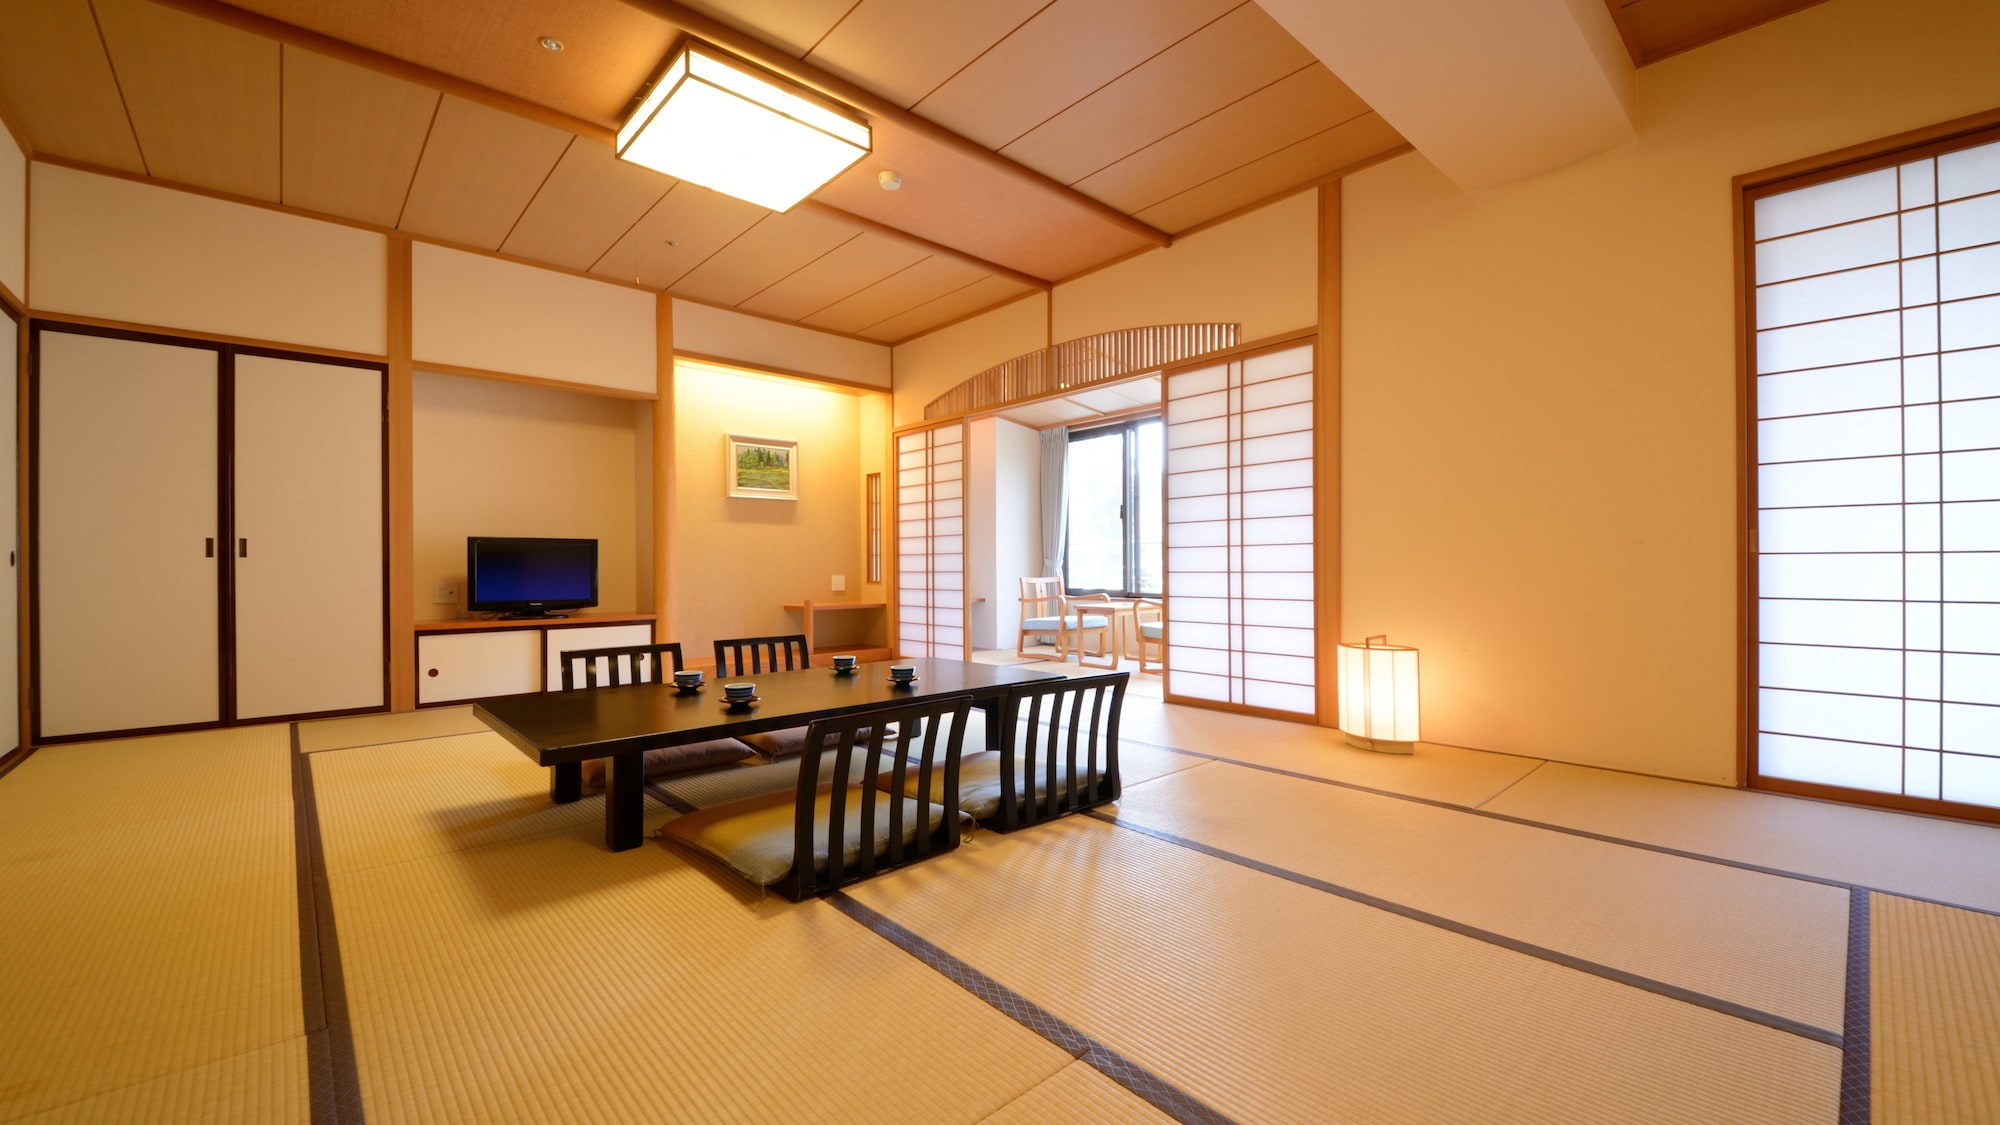 일본식 방. 일본의 전통적인 건축 양식의 스기야 구조로, 이풀의 향기에 싸여 있으면 느긋하게 보내 주세요.